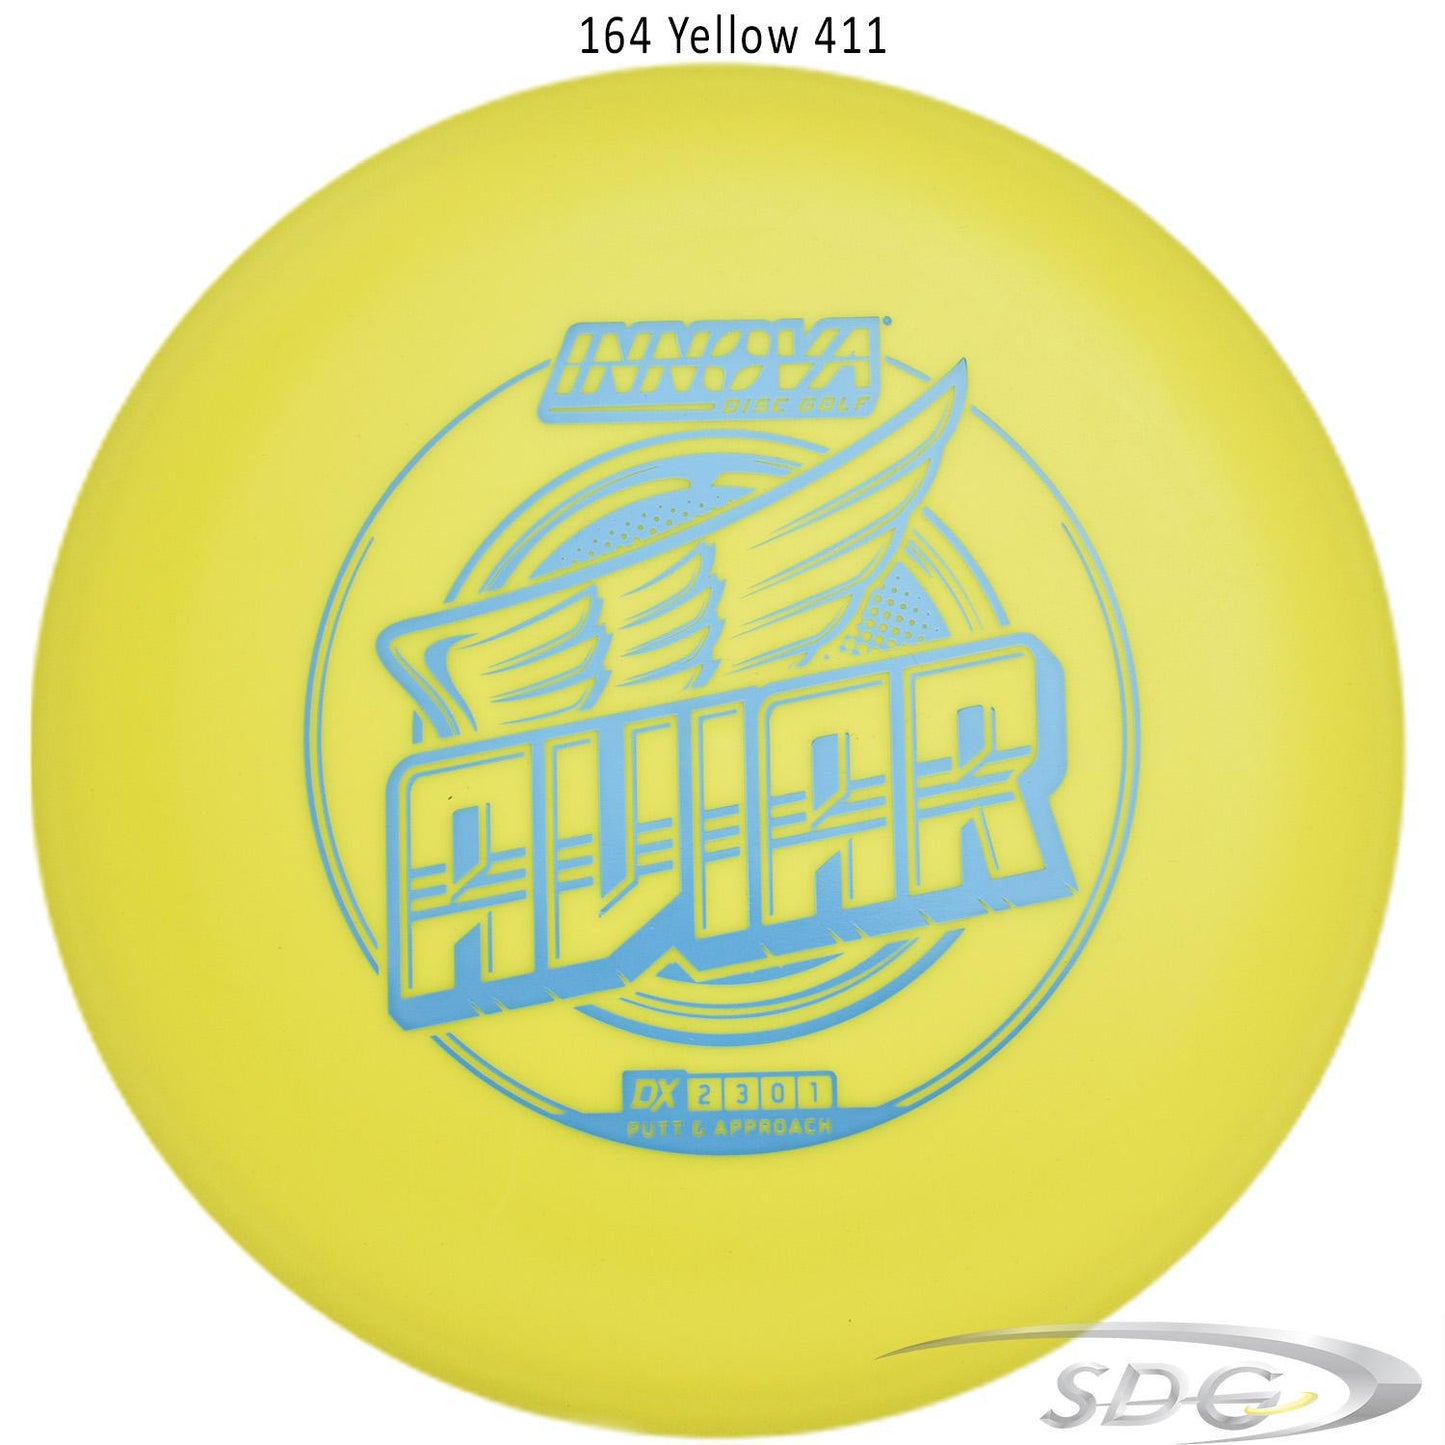 innova-dx-aviar-disc-golf-putter 164 Yellow 411 